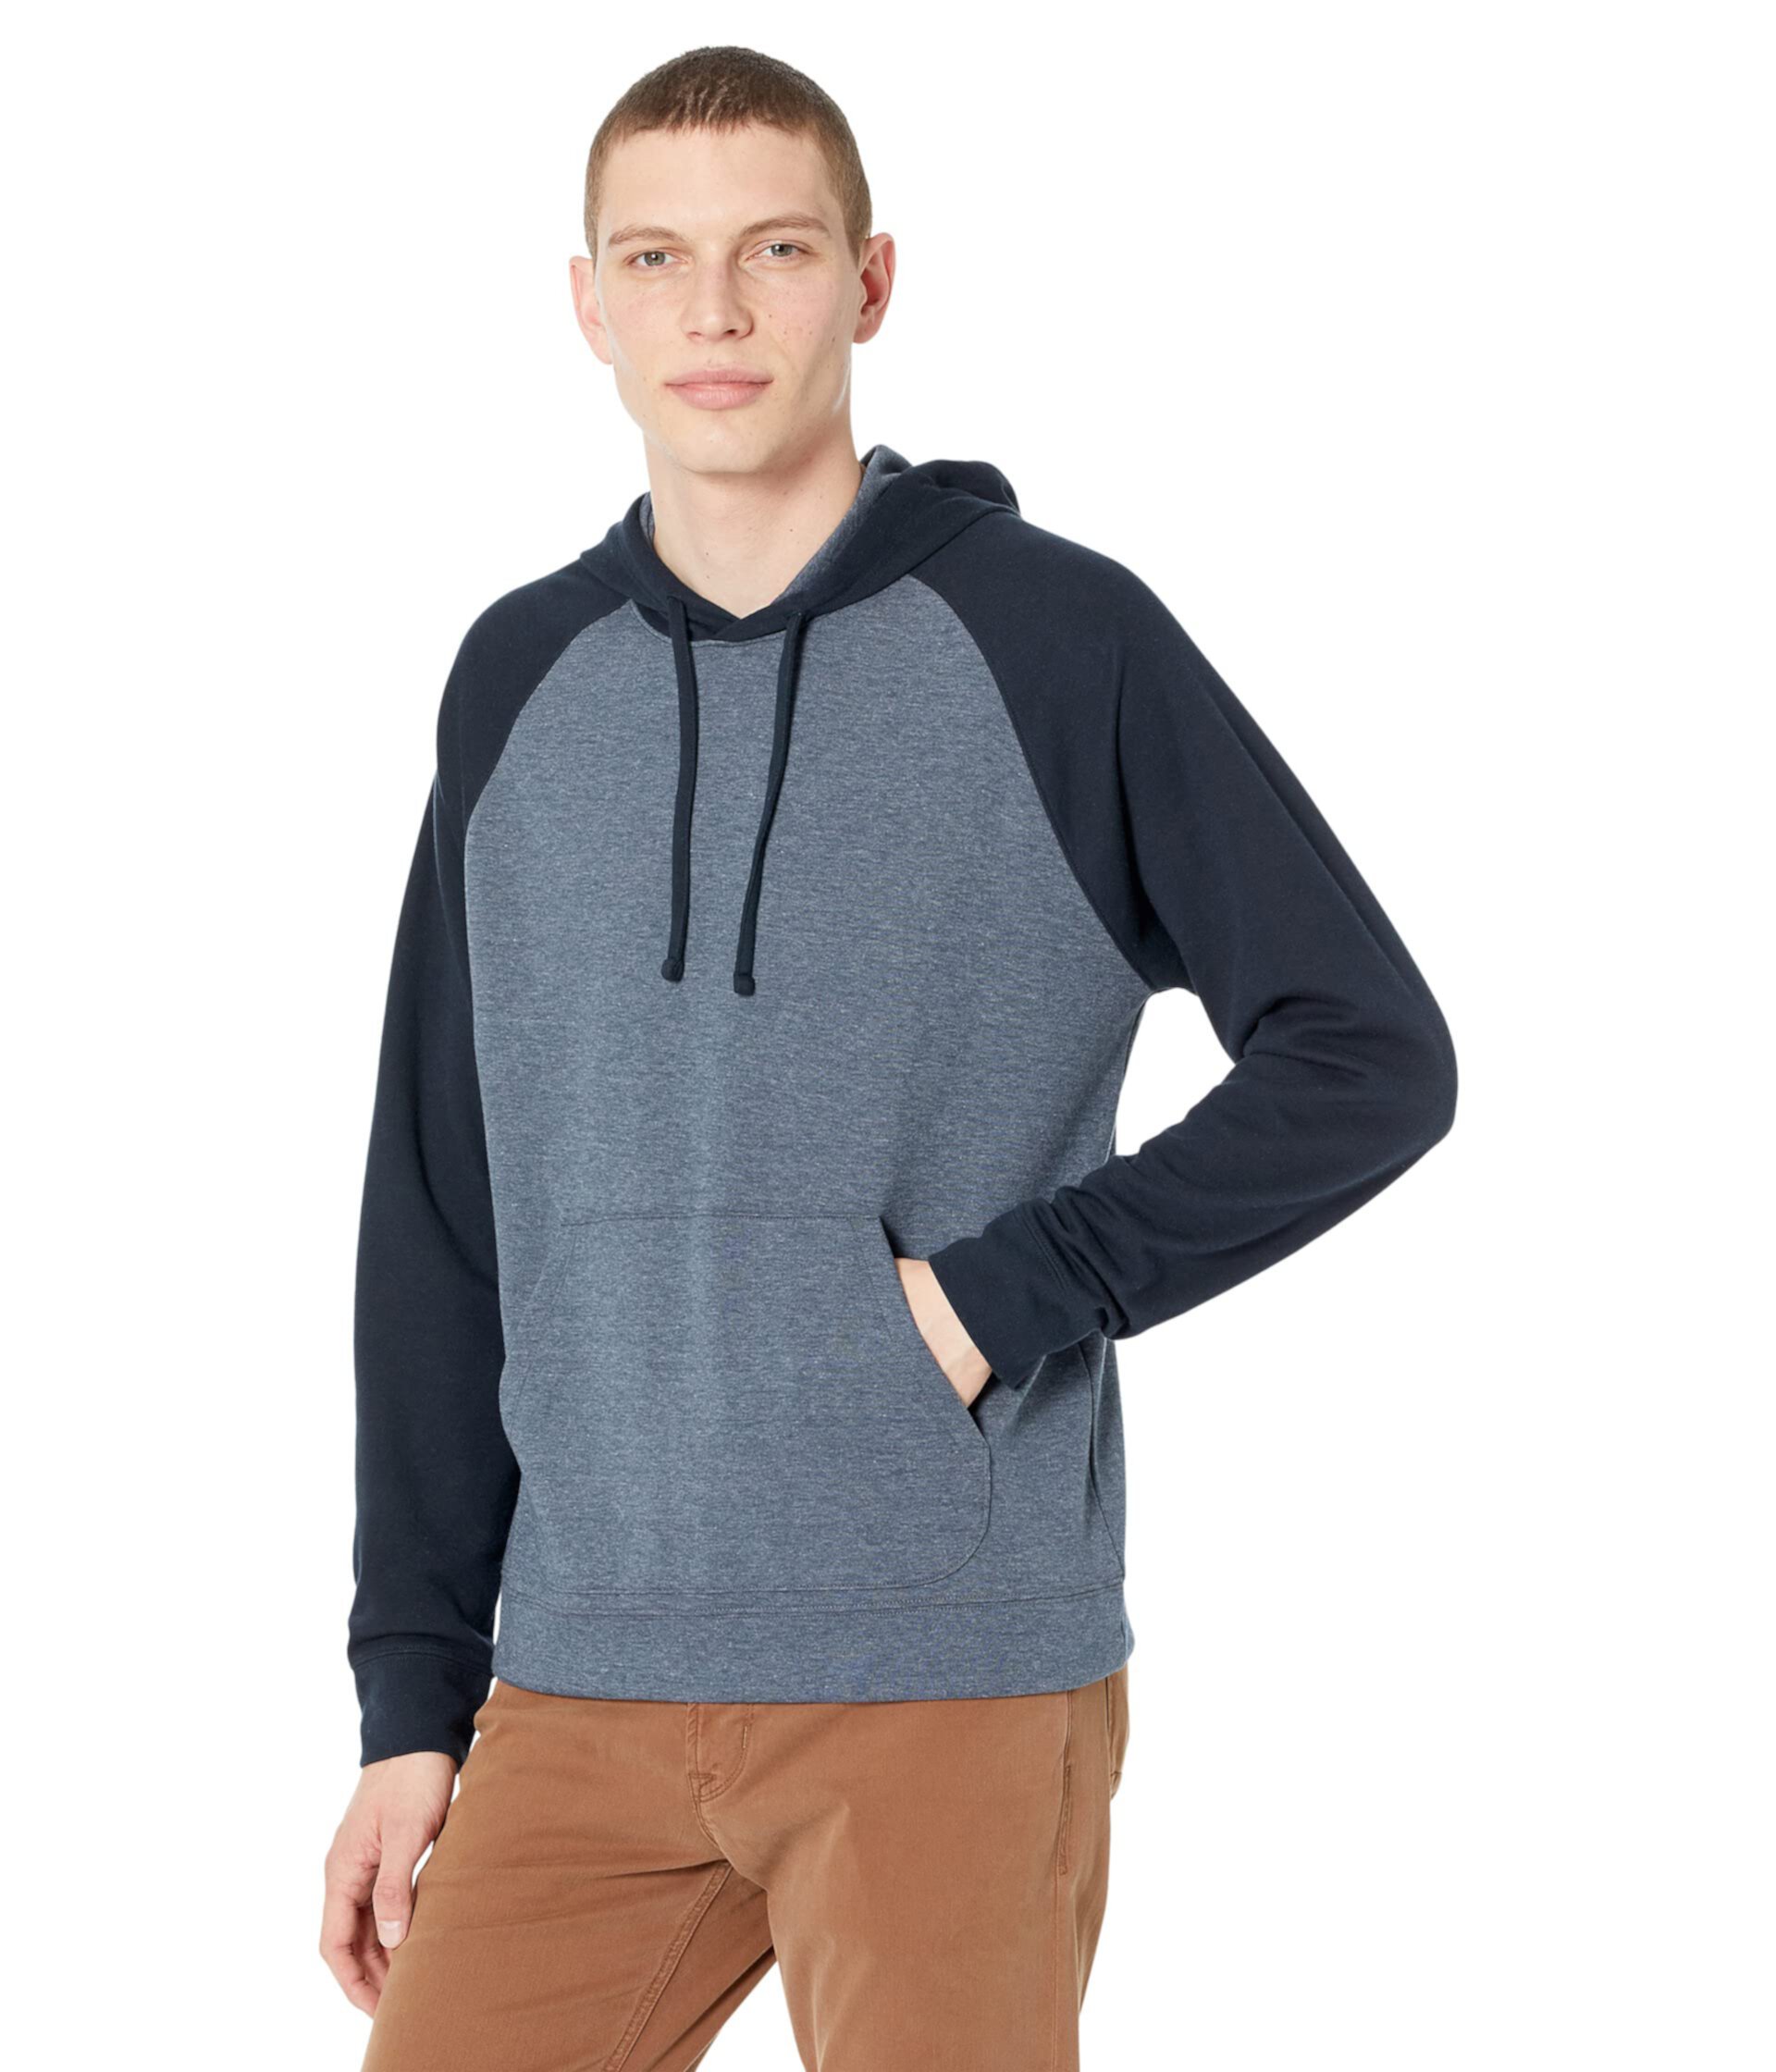 Пуловер с капюшоном двойной вязки в стиле цветных блоков Vince